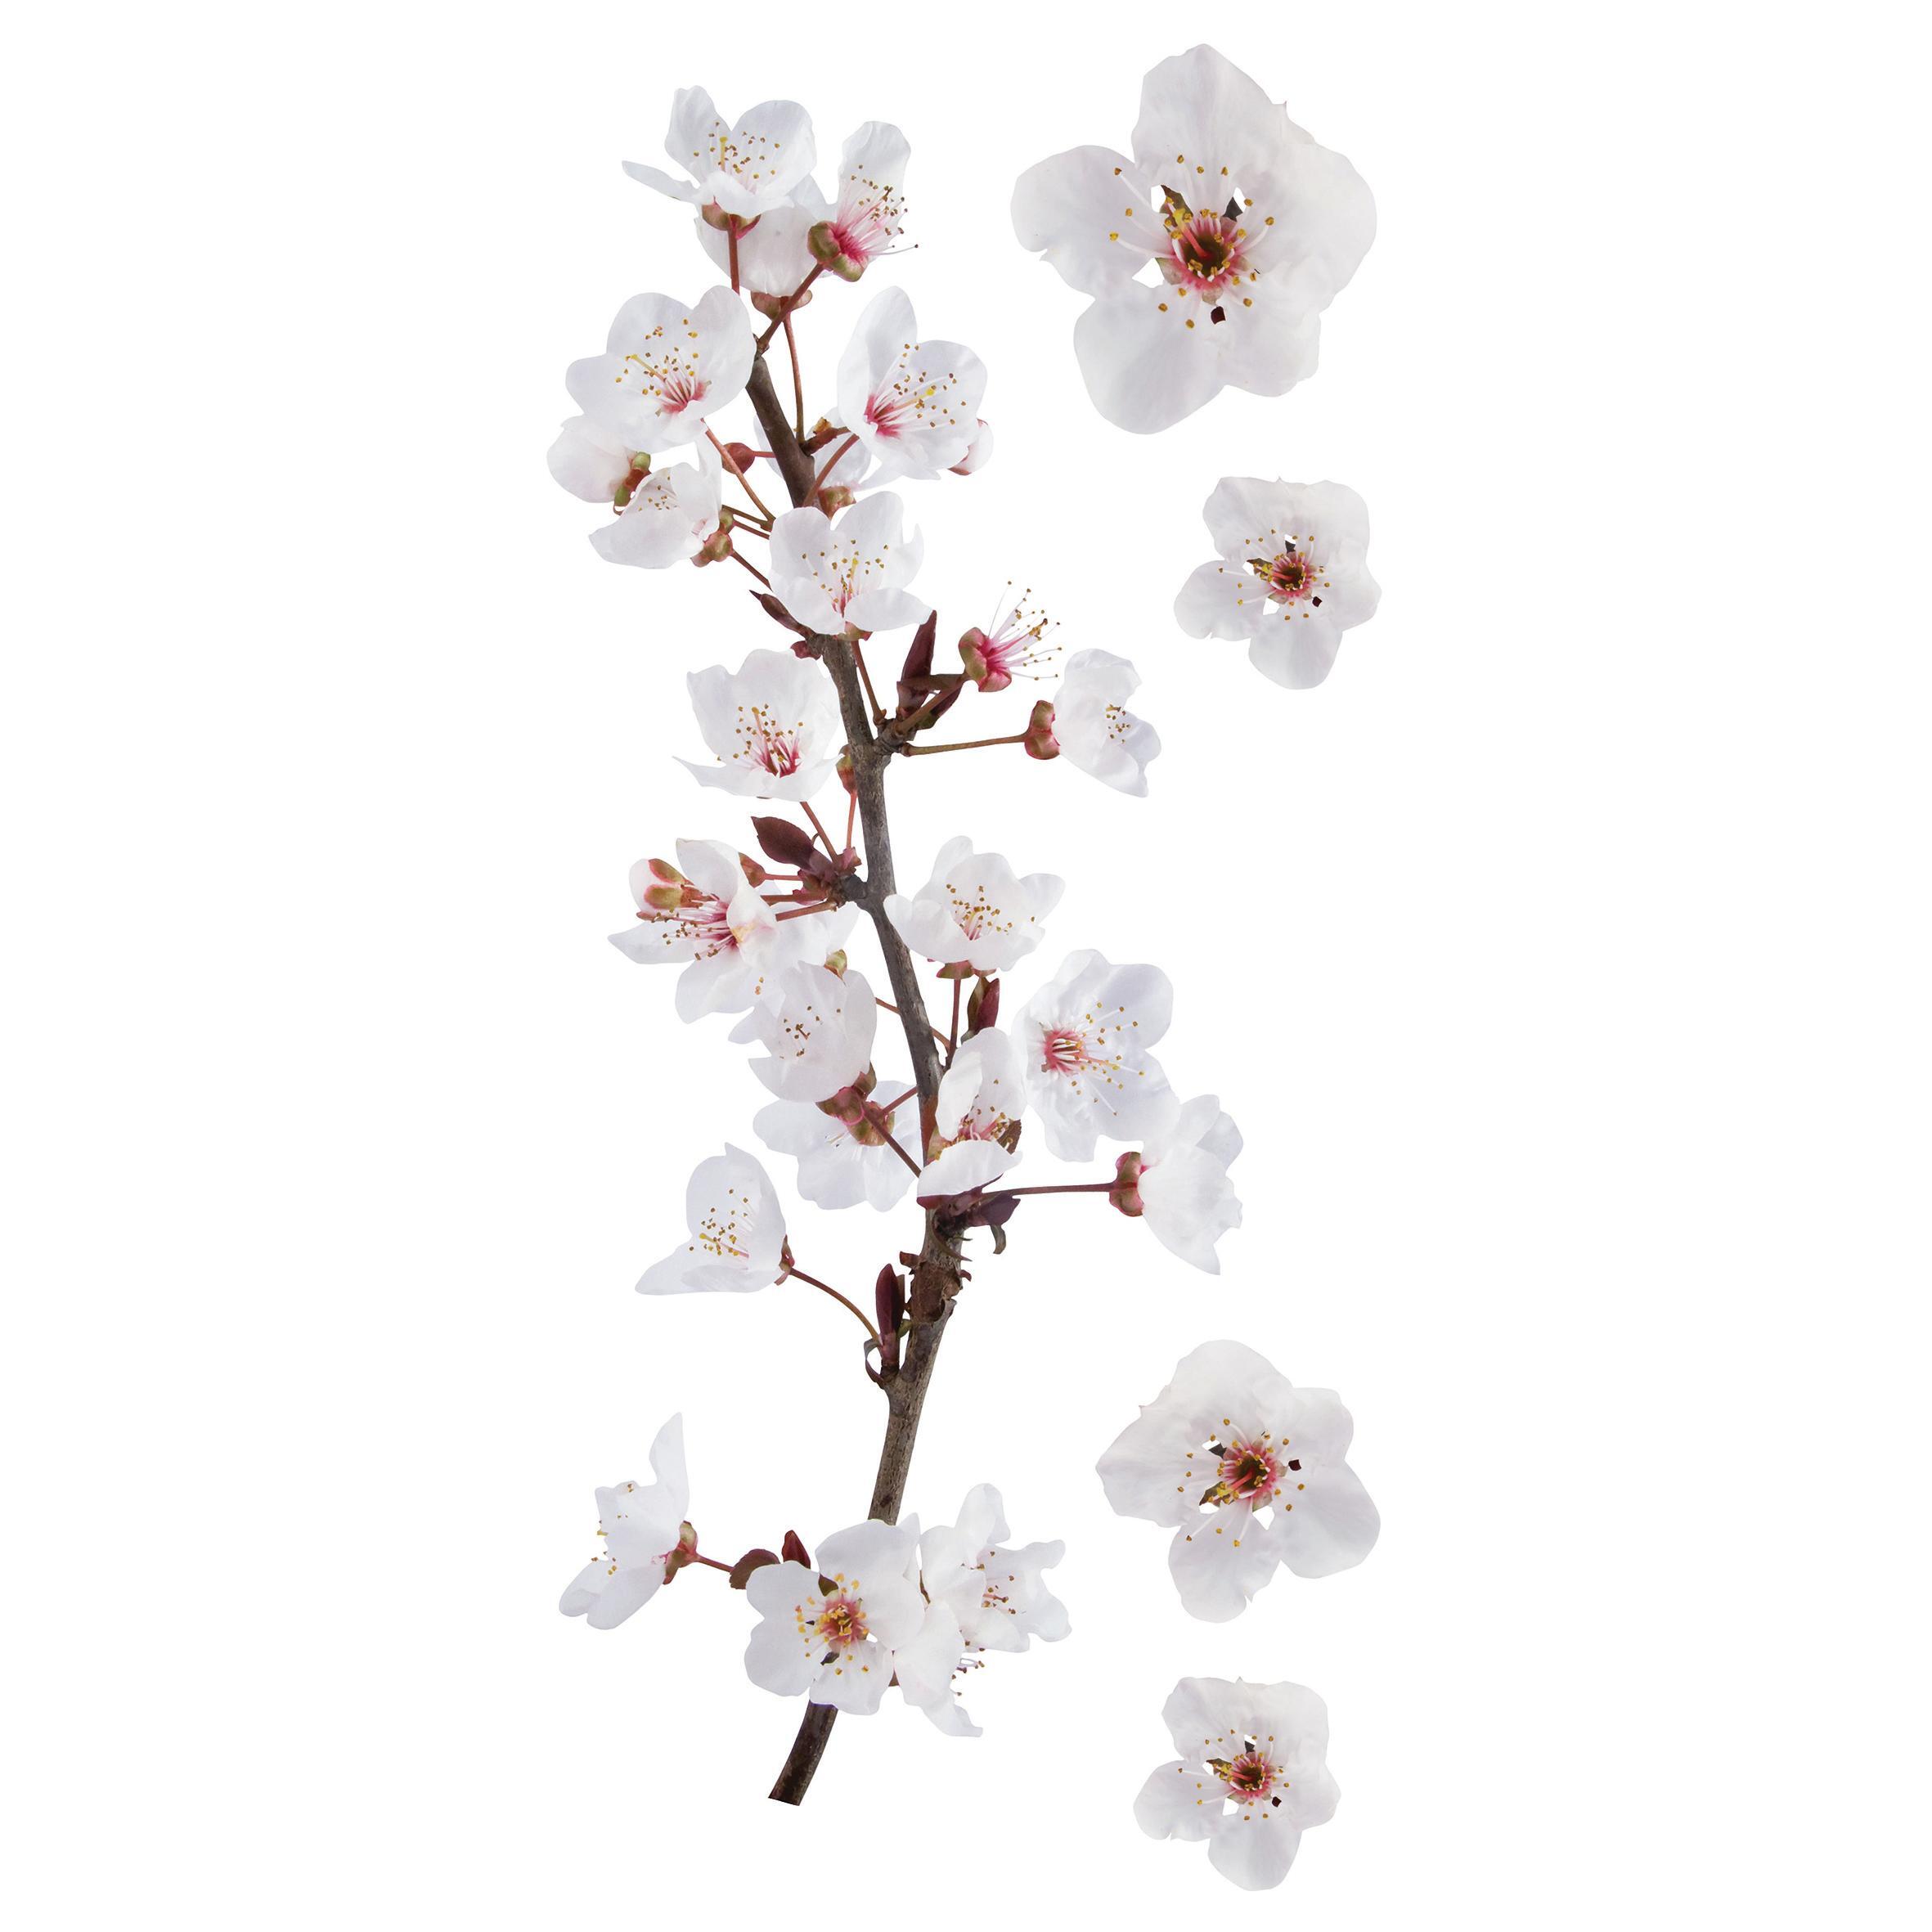 Sticker Photographic blossom 15x31 cm - 4